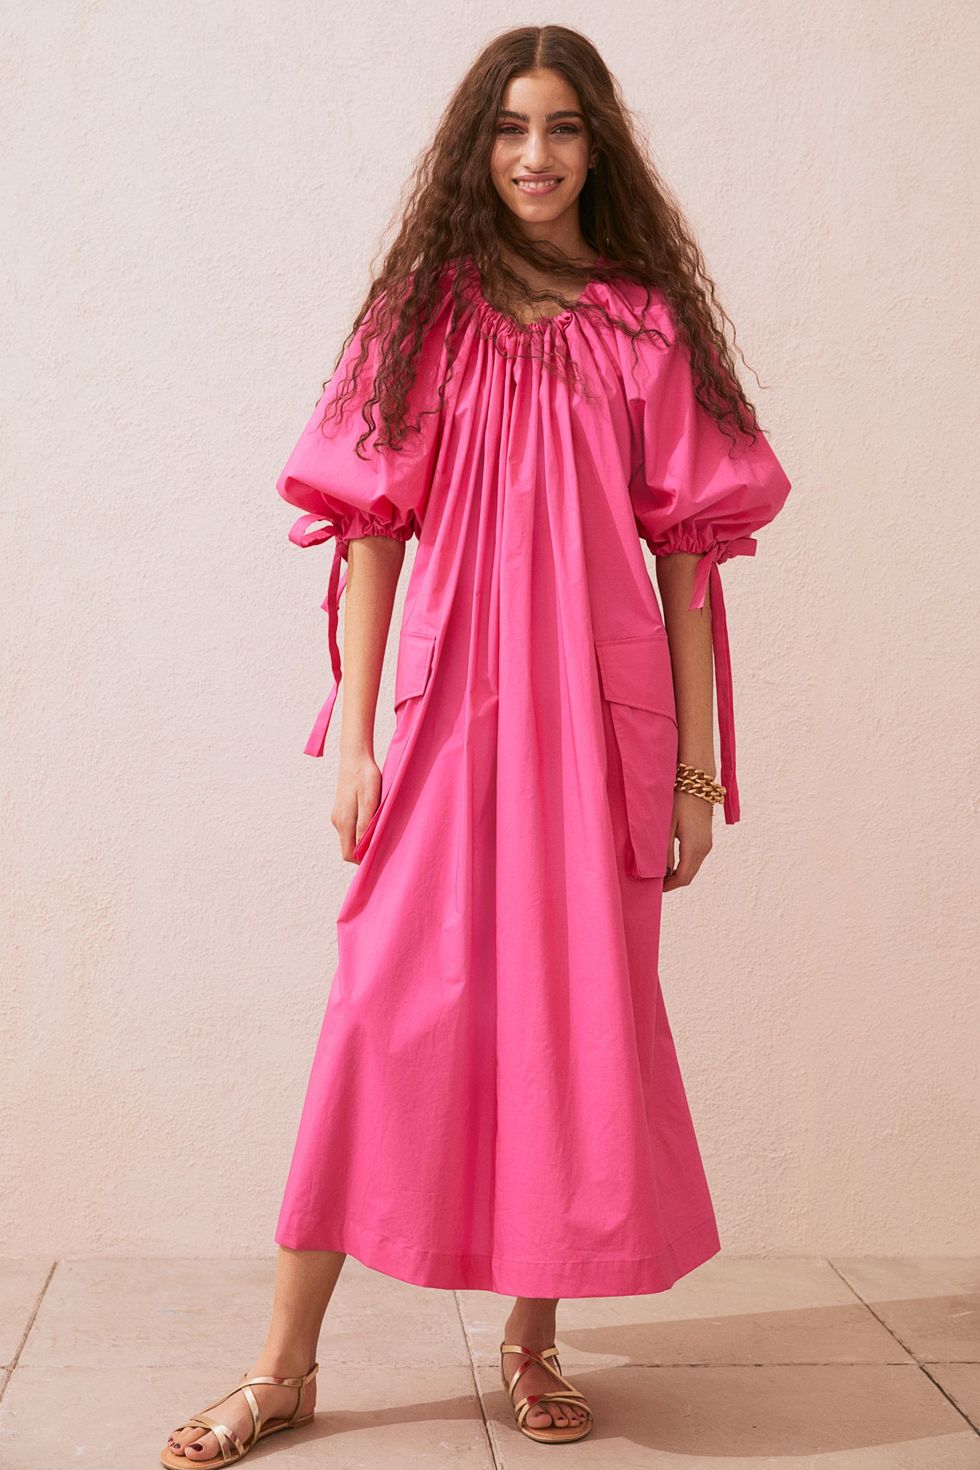 El vestido rosa de más viral regresa esta primavera-verano